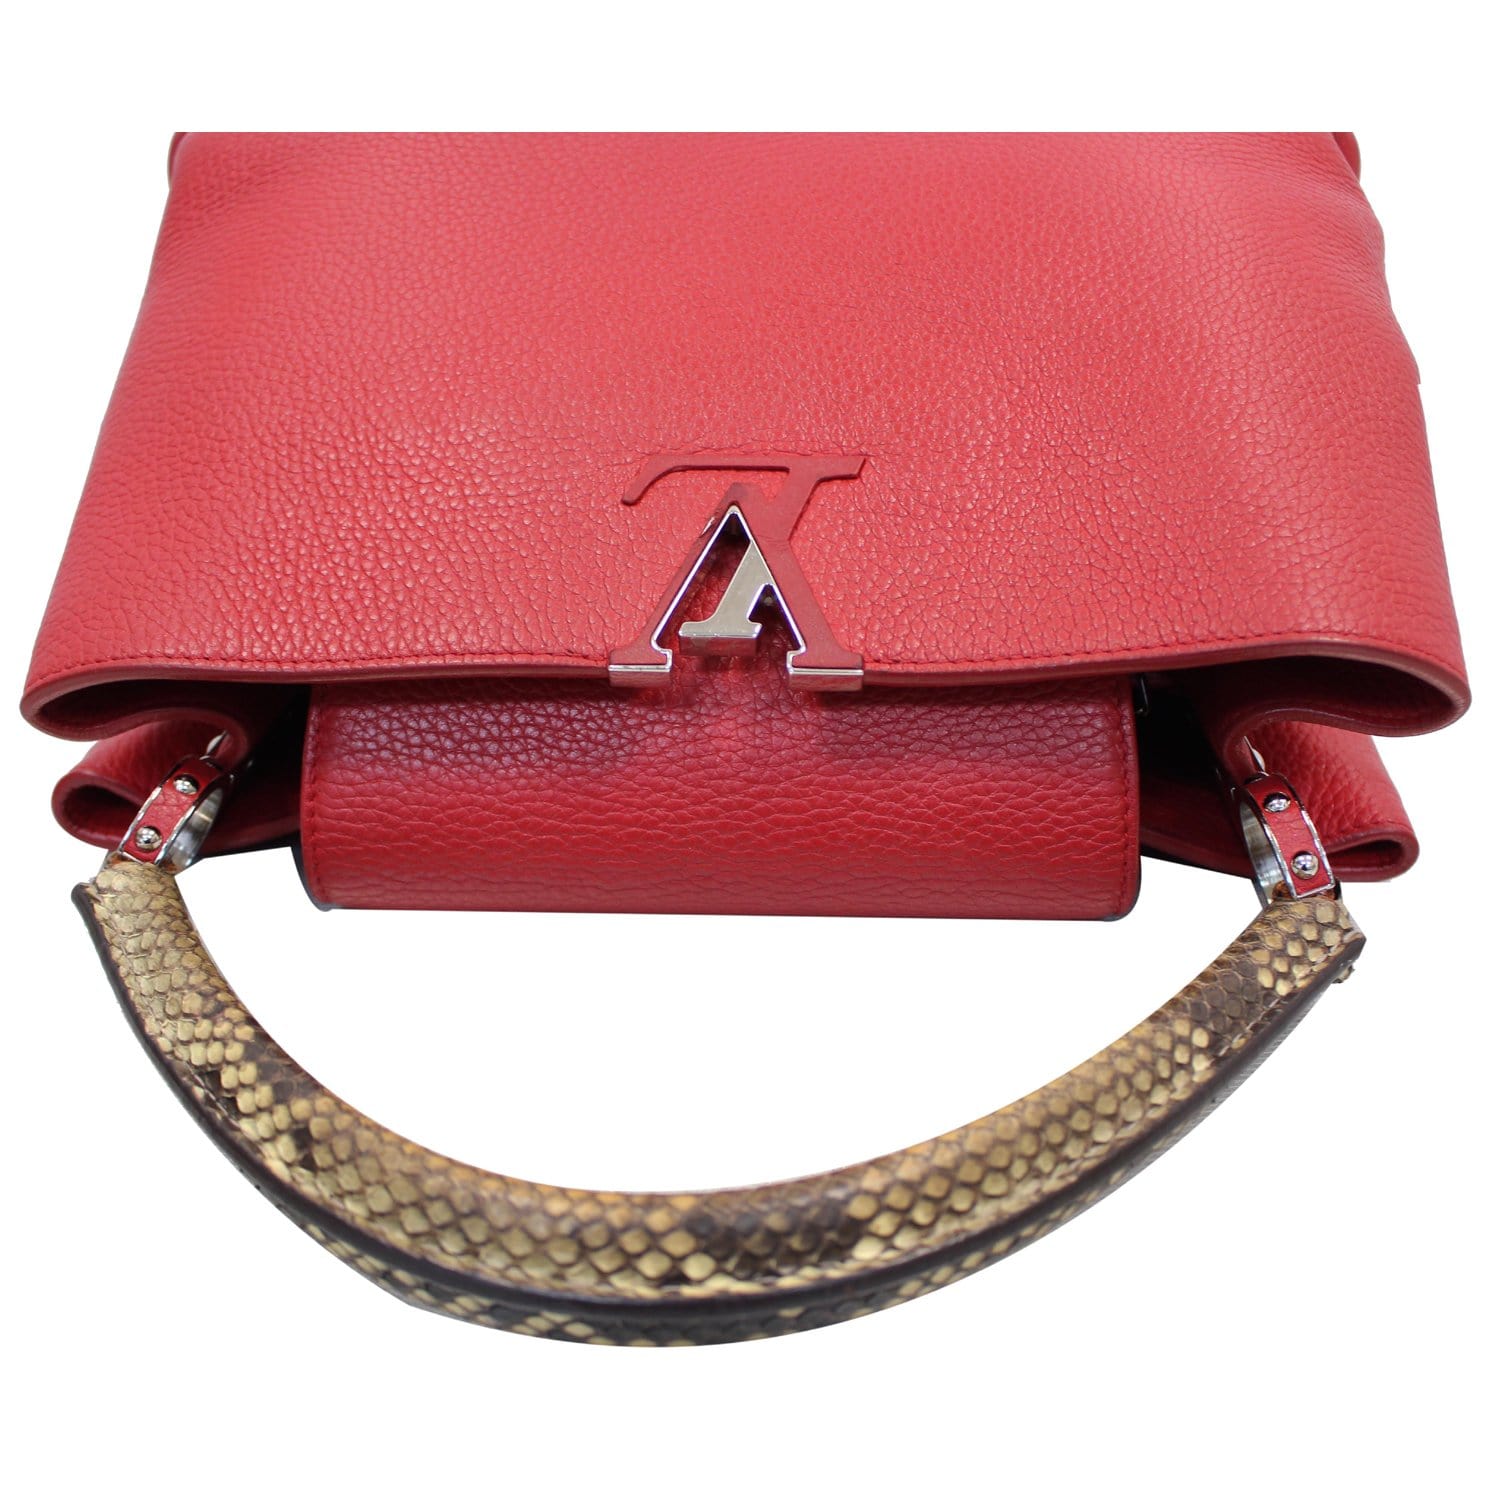 LOUIS VUITTON Capucines Taurillon Leather/Python Shoulder Bag Scarlet-US